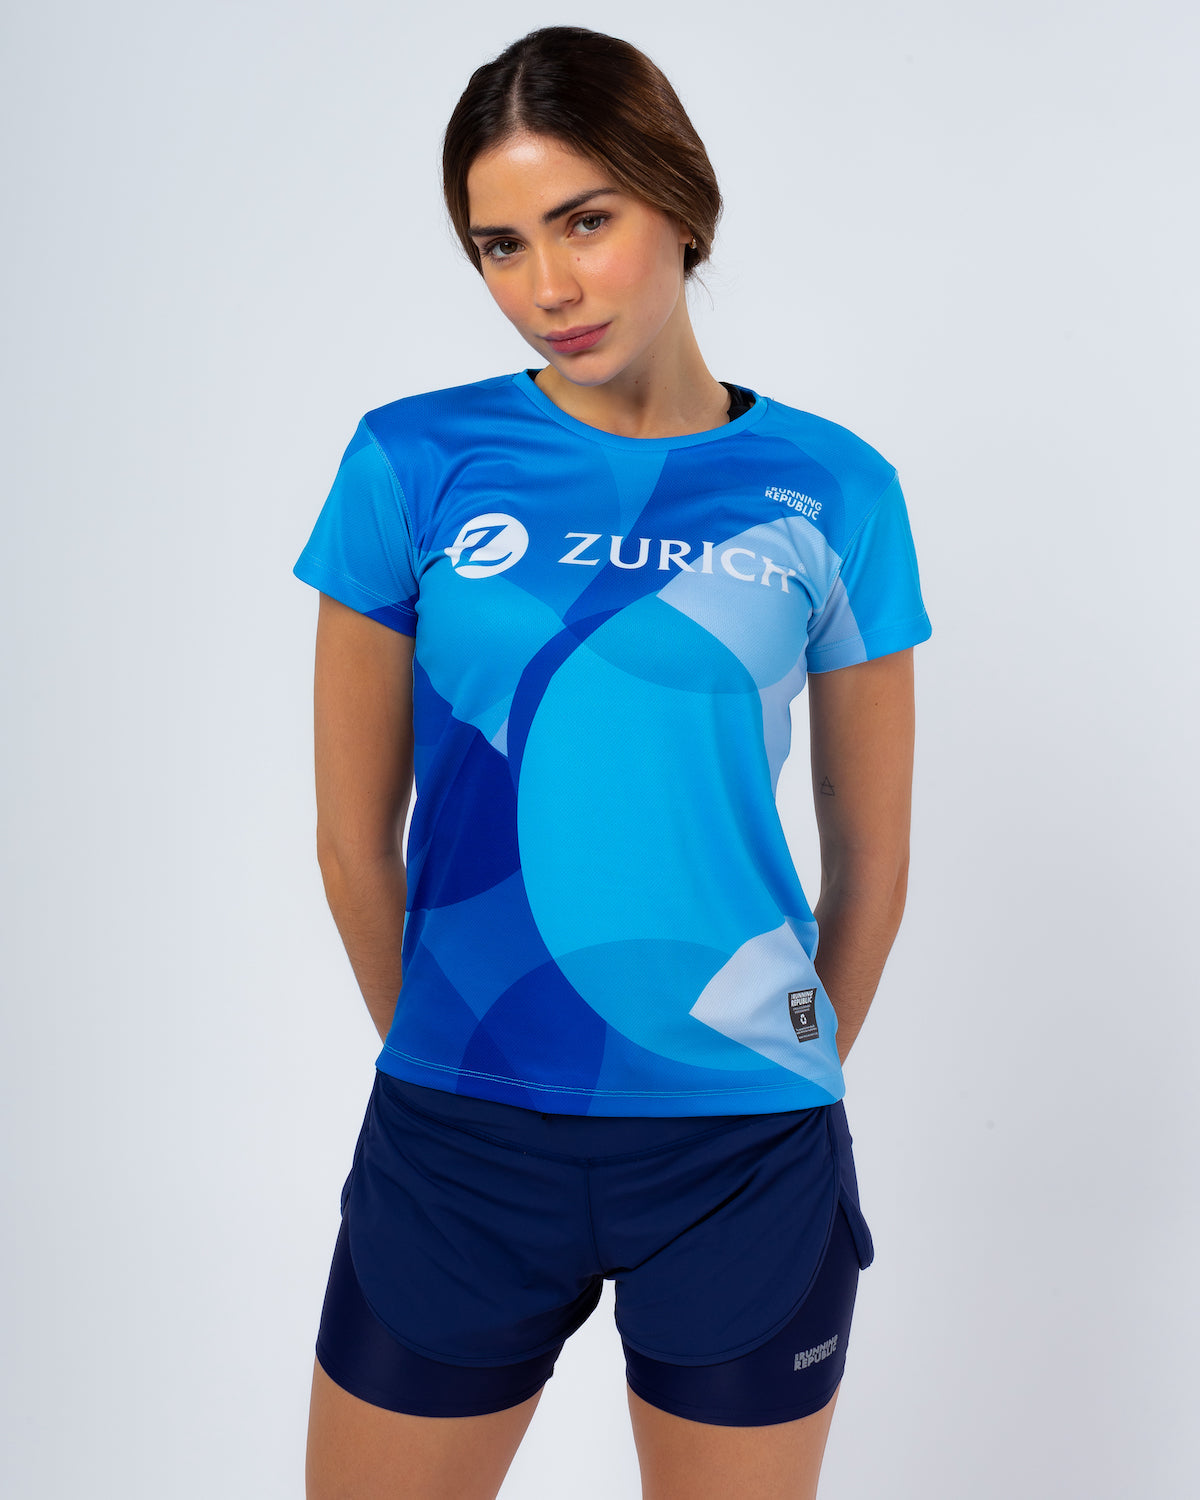 Camiseta Zurich Insurance Marathons women's performance